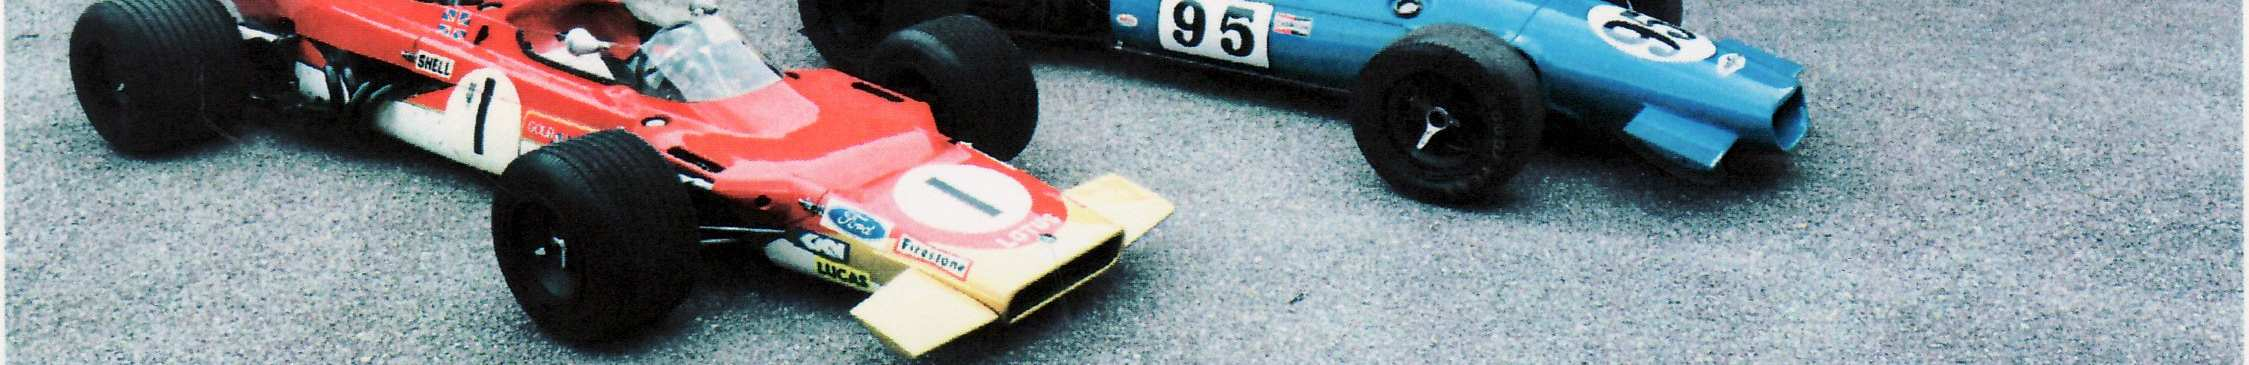 Einen Brabham BT18 (ebenfalls Formel 2) fährt Hans Royer, Kaiman Werkspilot in Formel Super V und Formel 2. Für Benzinduft und rauchende Reifen ist also gesorgt!